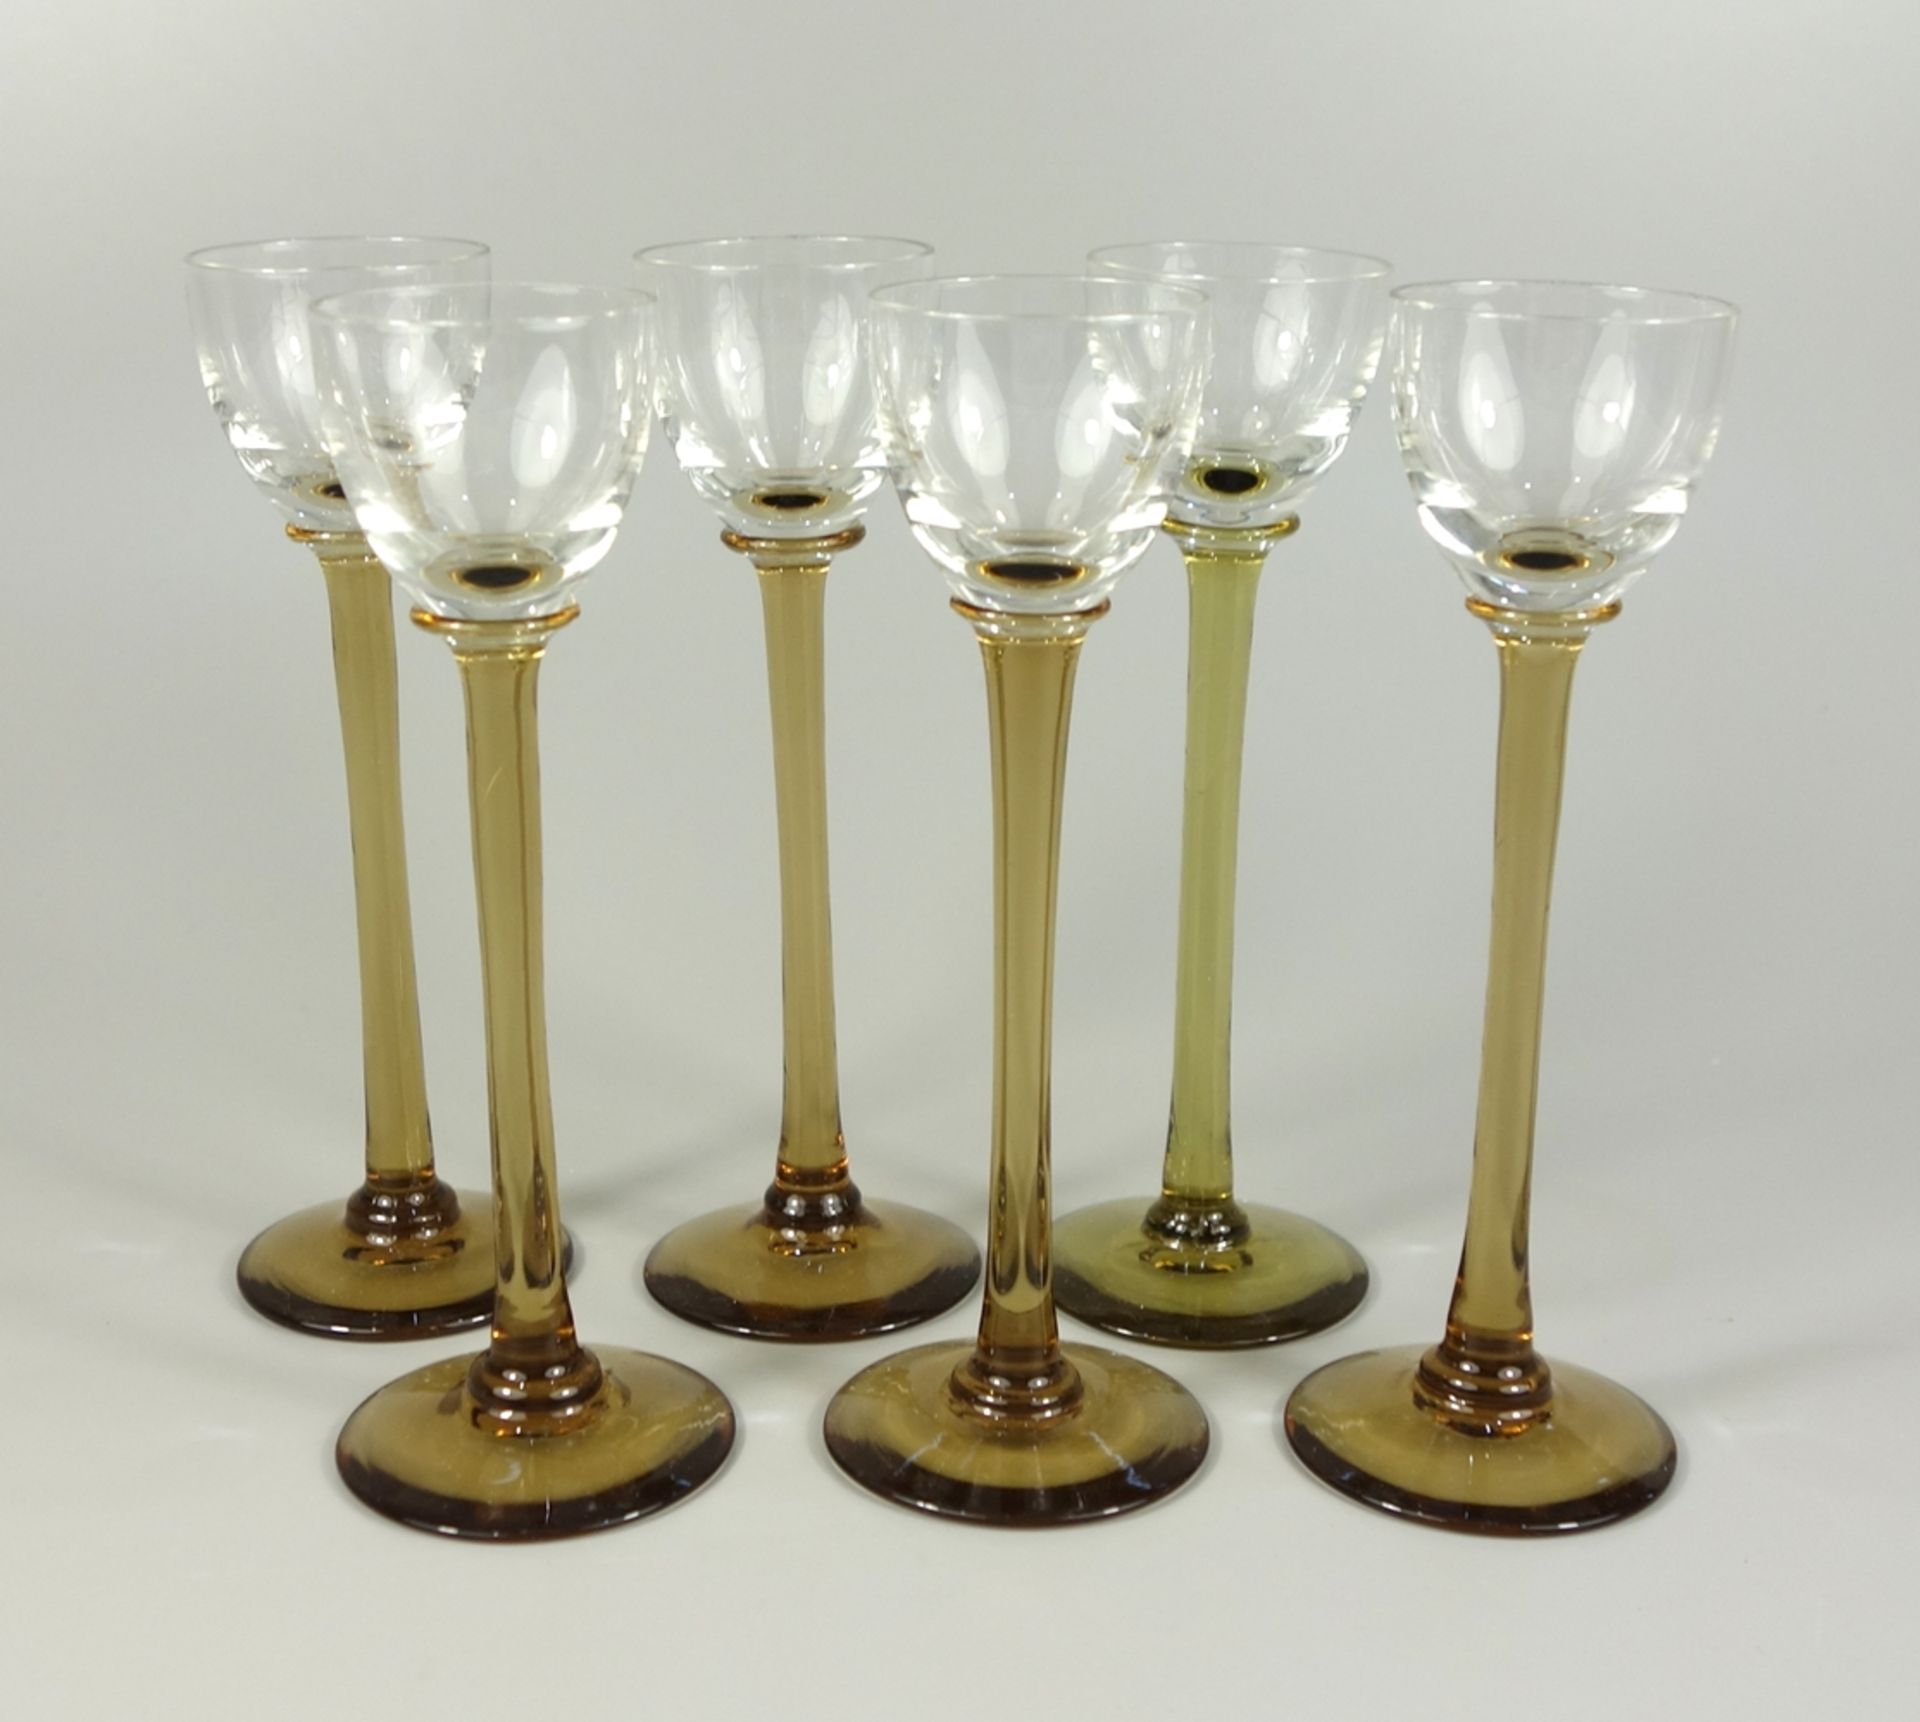 6 langstielige Likörgläser, Jugendstil, um 1920, H.15cm, gelb-brauner Schaft, Klarglaskuppa6 liqueur